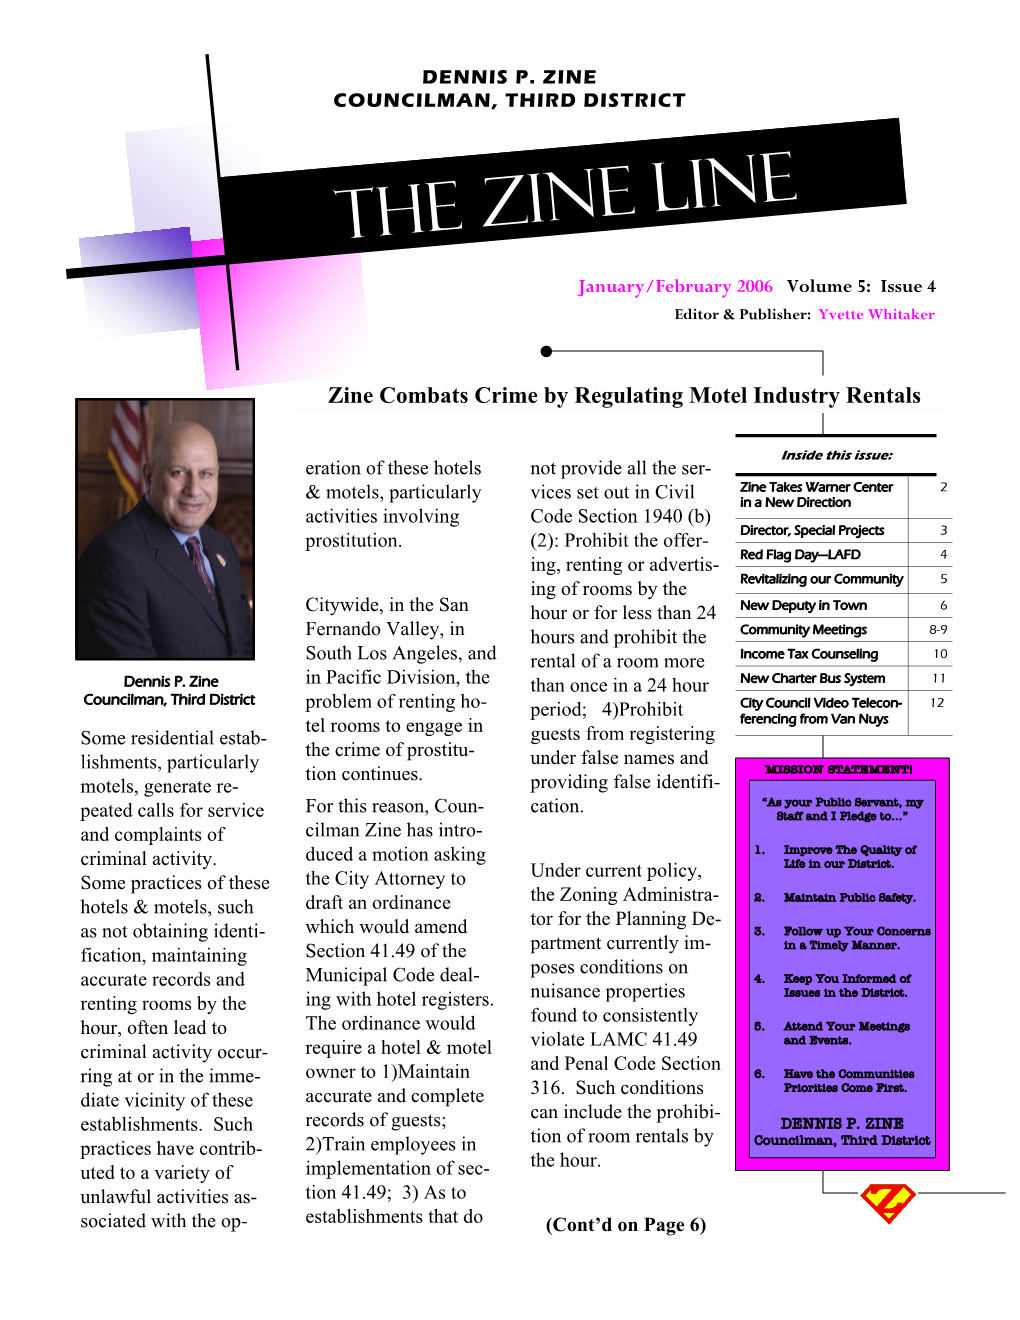 January 2006 Zine Line